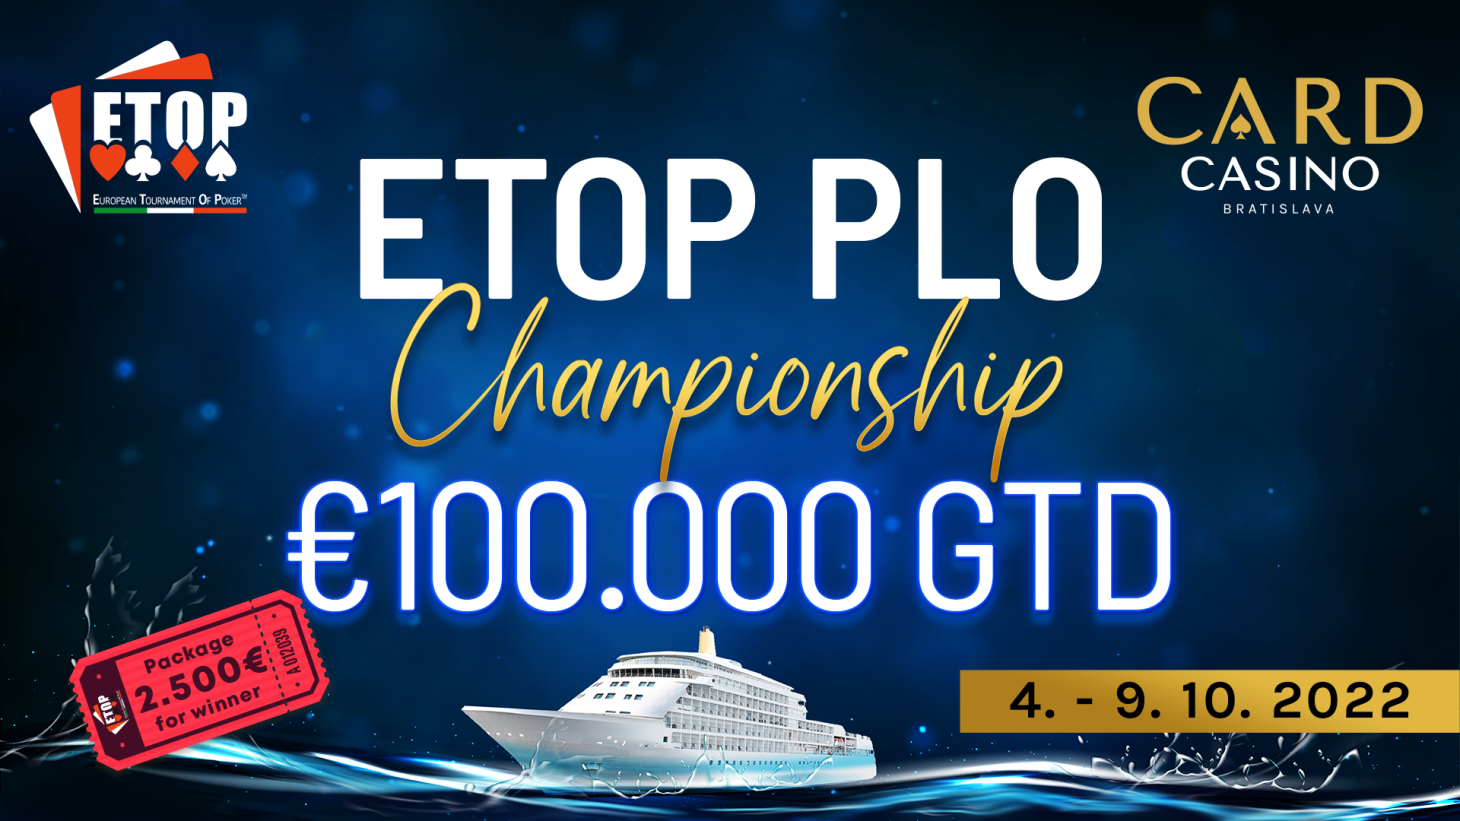 Októbrový ETOP so 100.000€ GTD láka Main Eventom i exkluzívnym High Rollerom